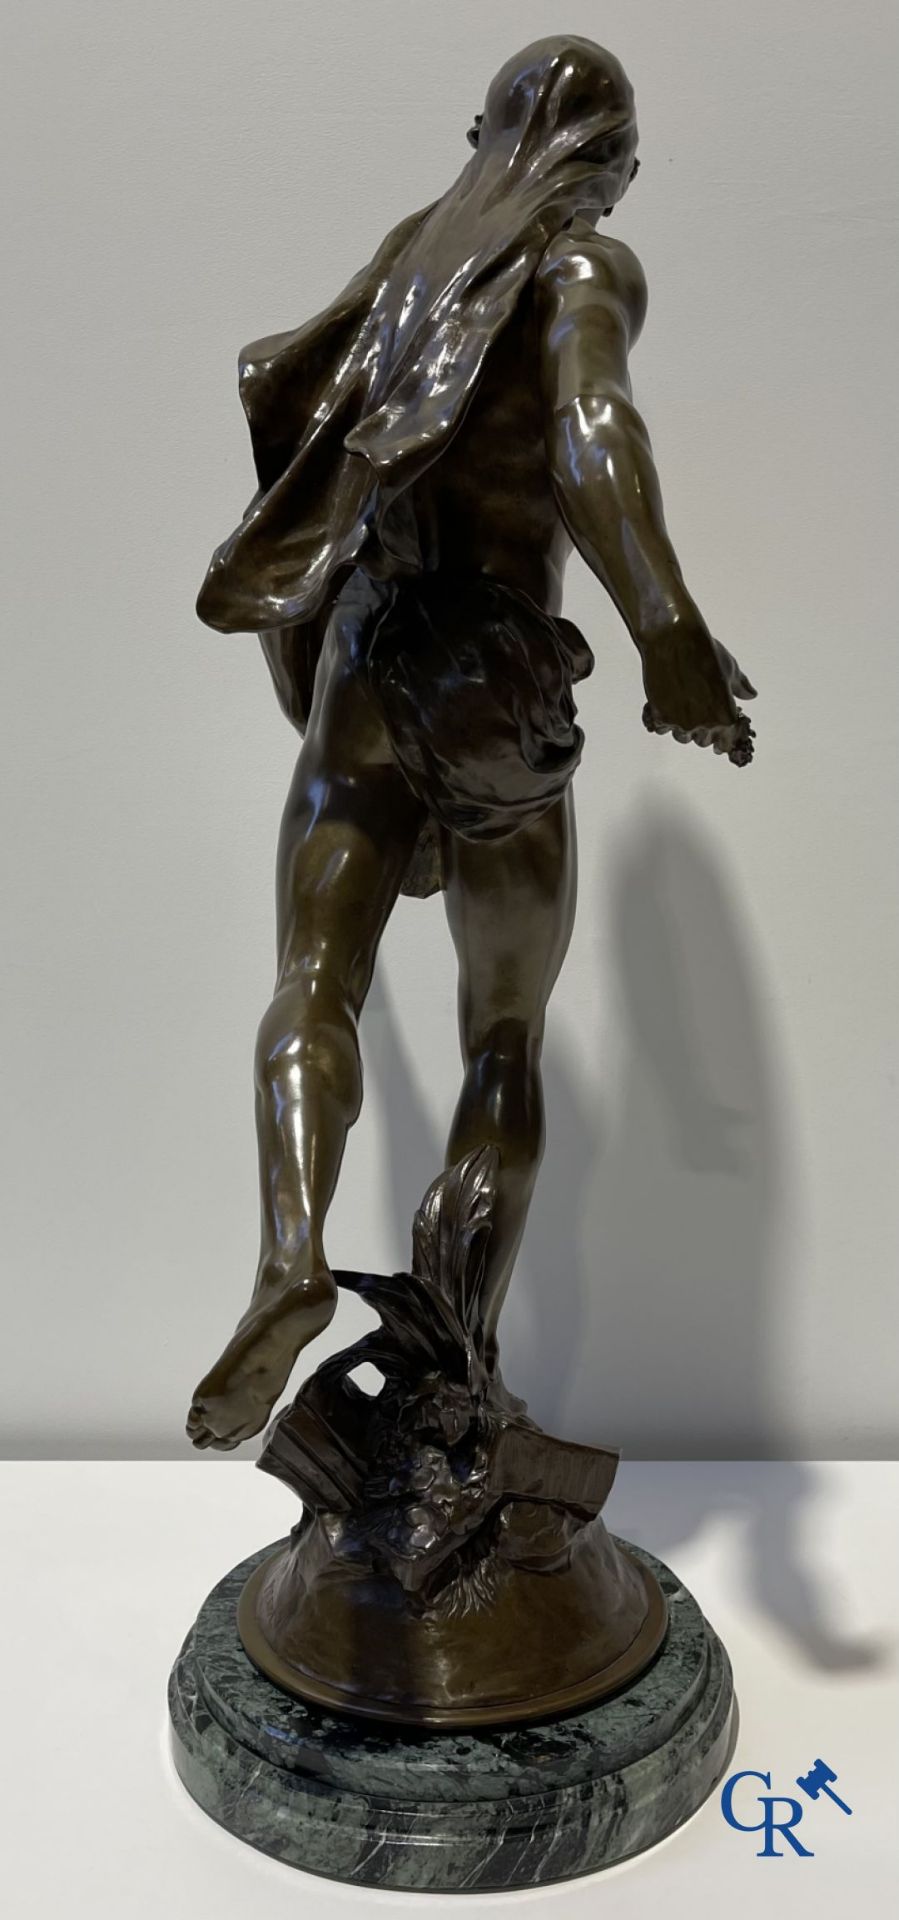 Emile Louis Picault (1833-1915) Large bronze statue "Le Semeur d'idées"
Foundry stamp Collin & Cie P - Bild 11 aus 16